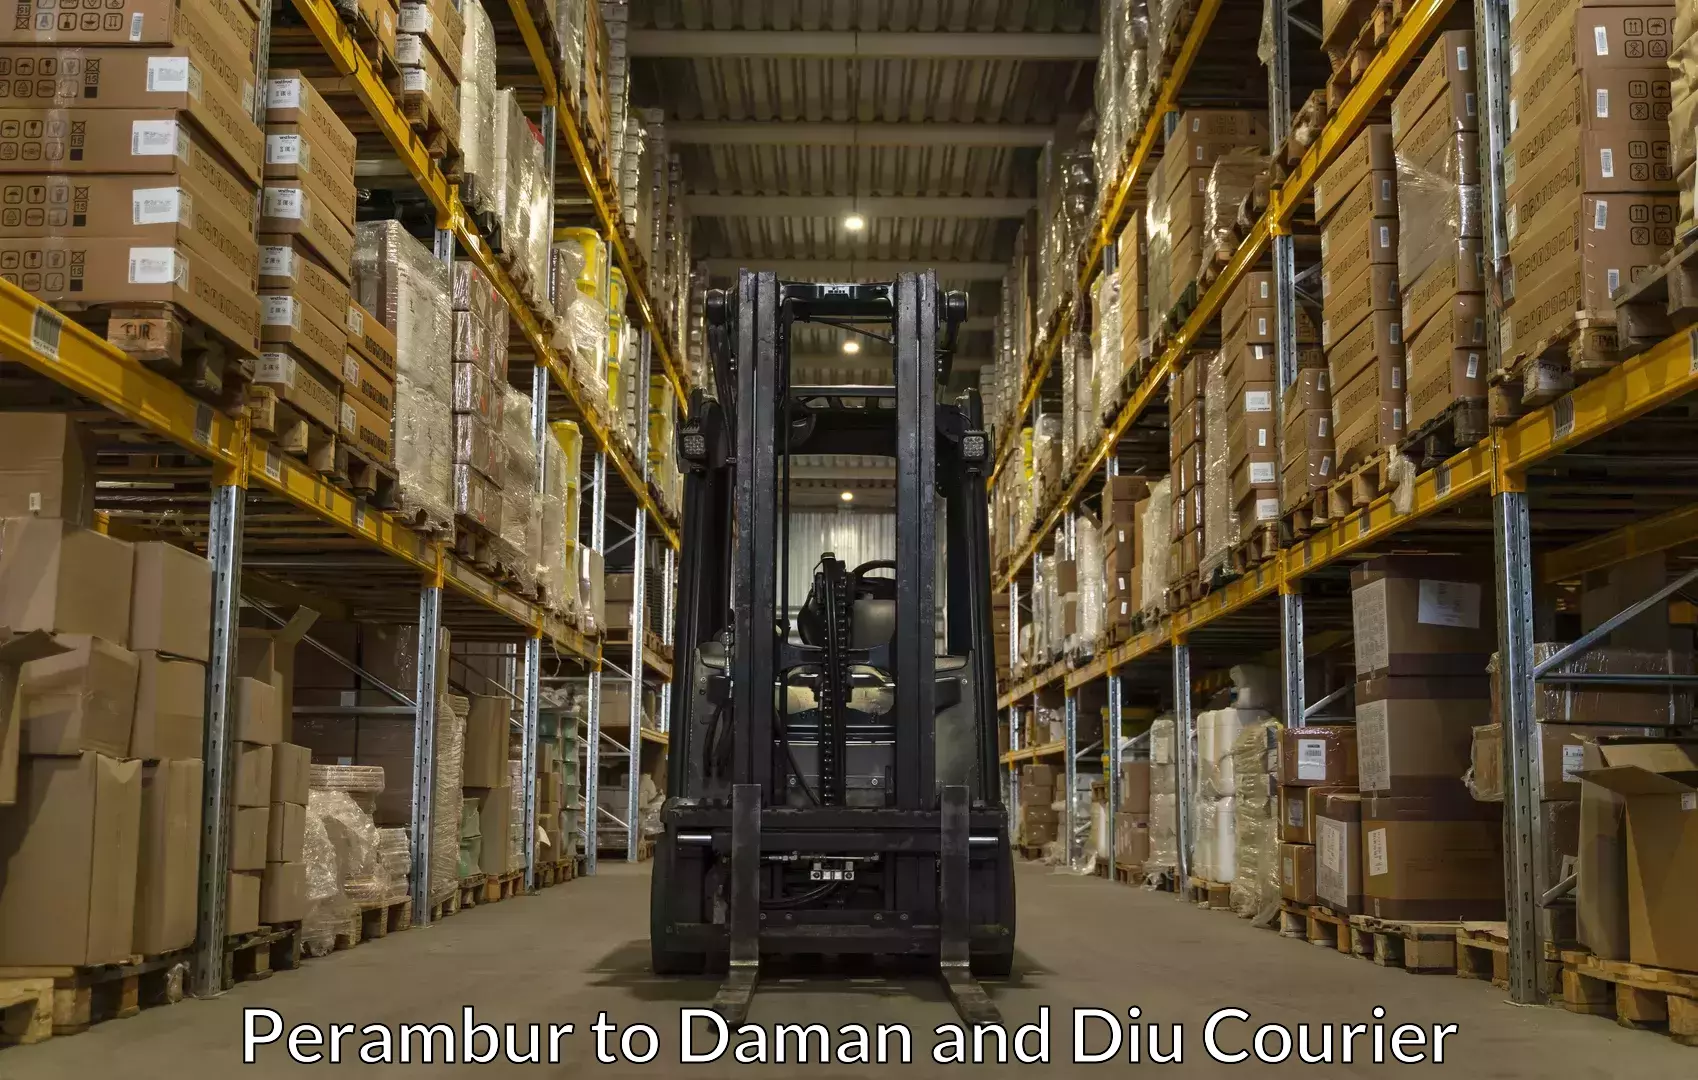 Luggage delivery app Perambur to Daman